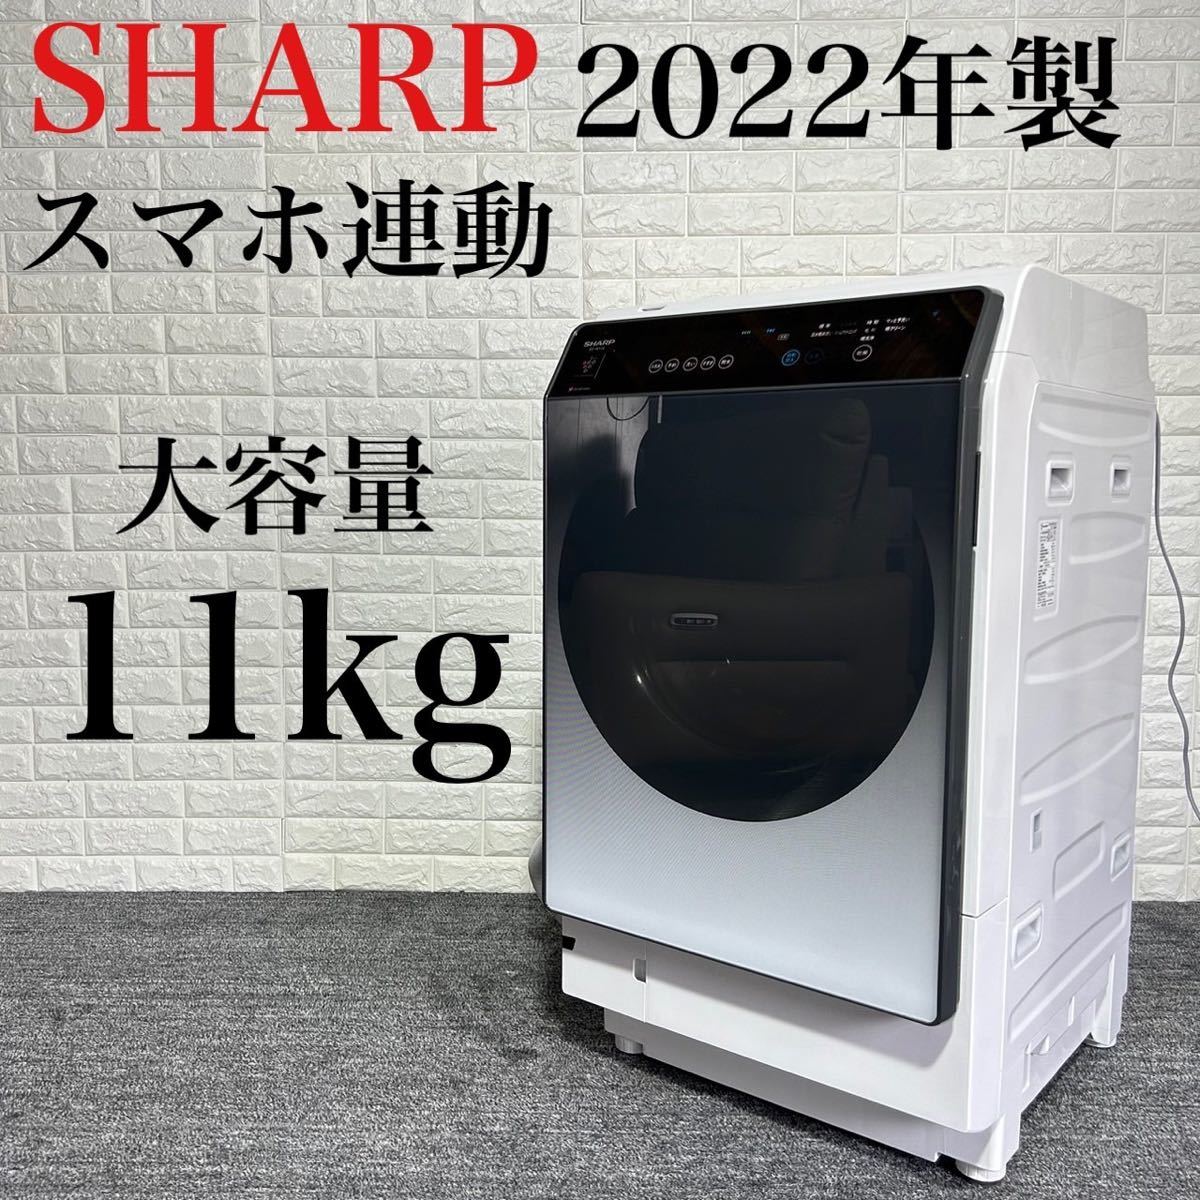 SHARP ドラム式洗濯機 ES-W114-SL 2022年 乾燥機 k0445 détails d